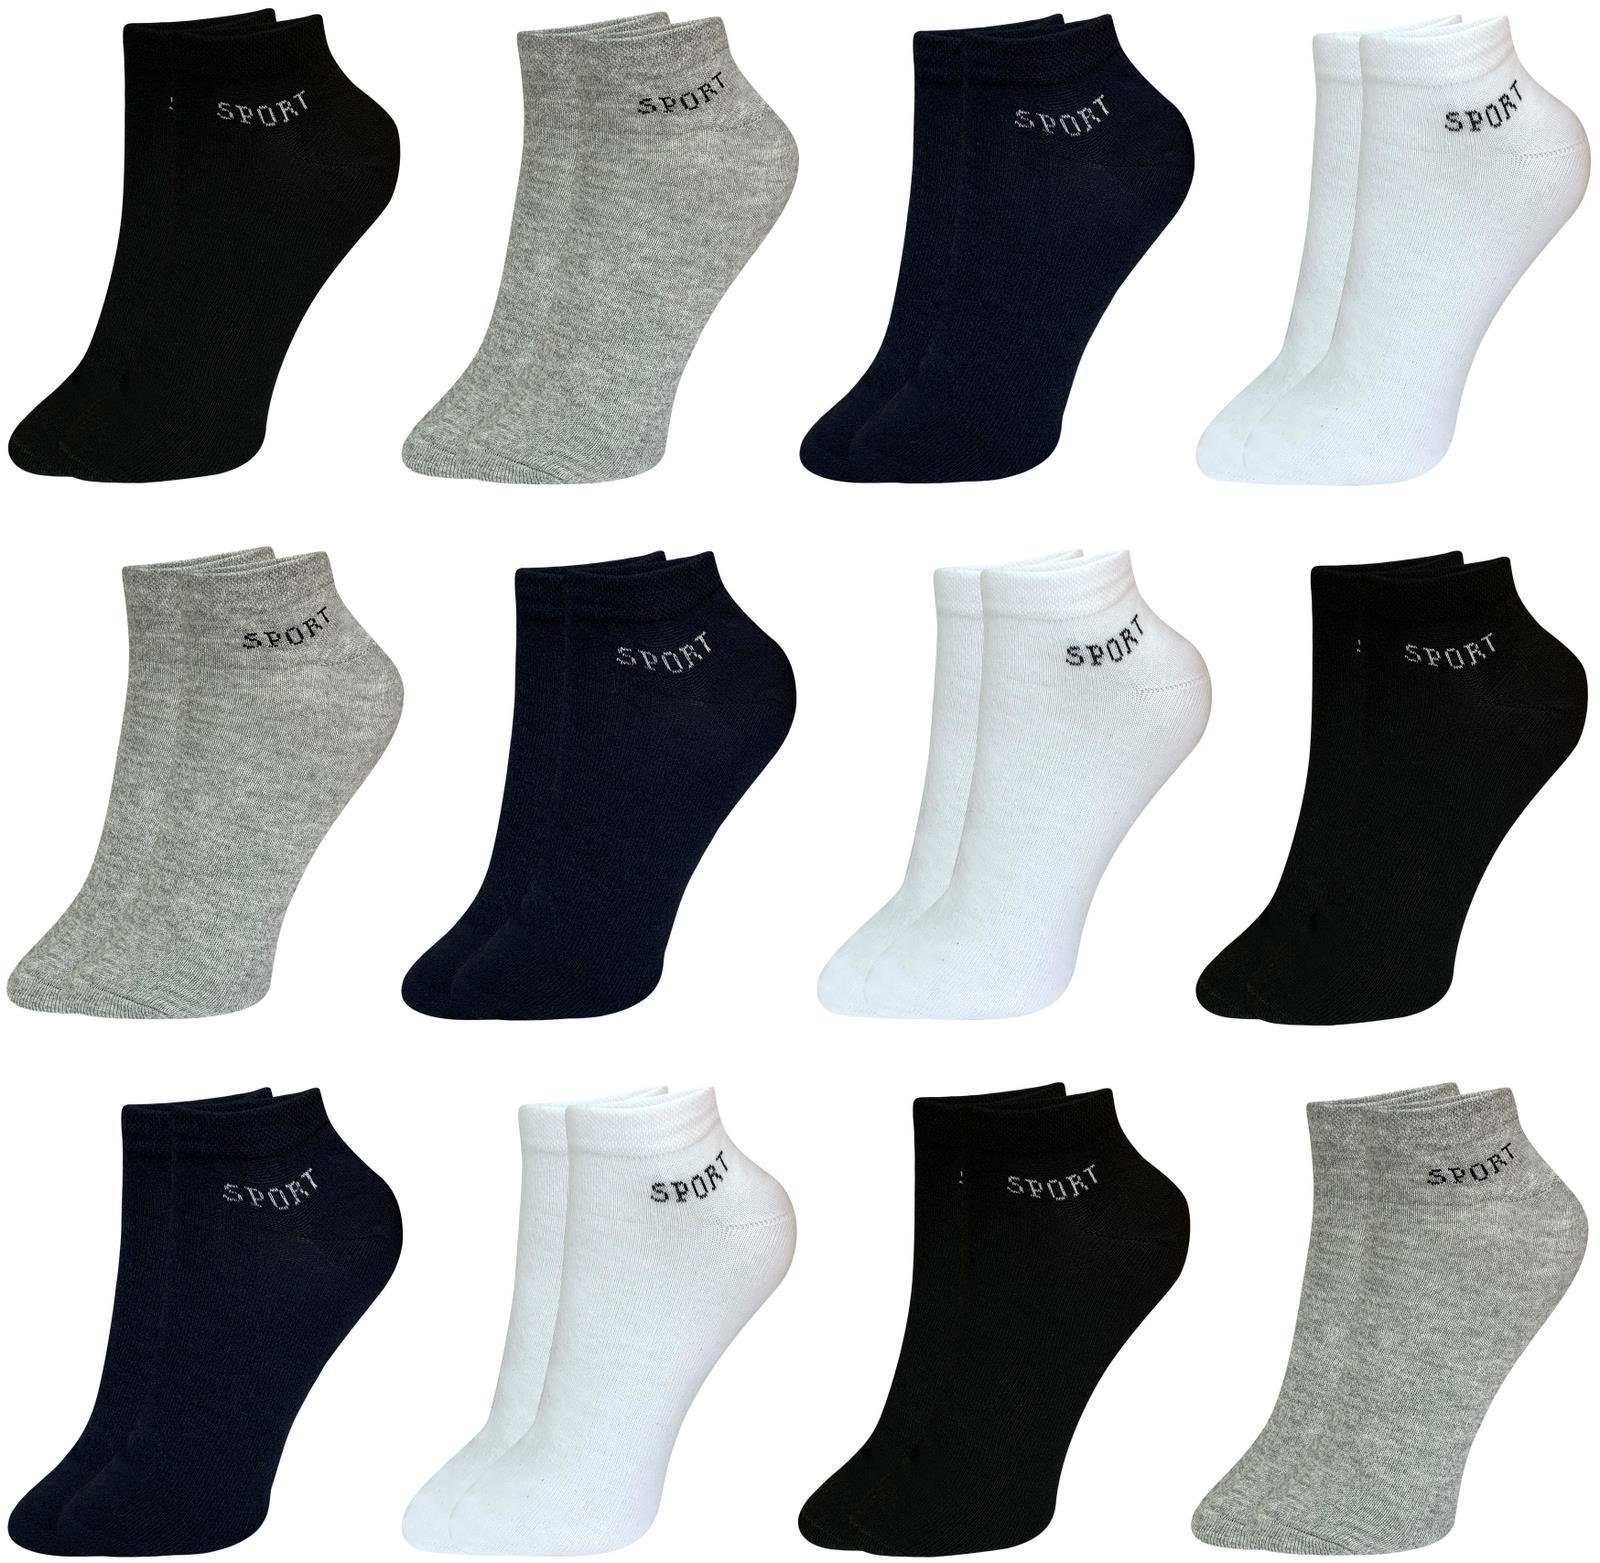 Wäsche/Bademode Socken LOREZA Kurzsocken 12 Paar Herren Socken Business Baumwolle Einheitsg (Paar, 12-Paar, 12 Paar) 12-Paar